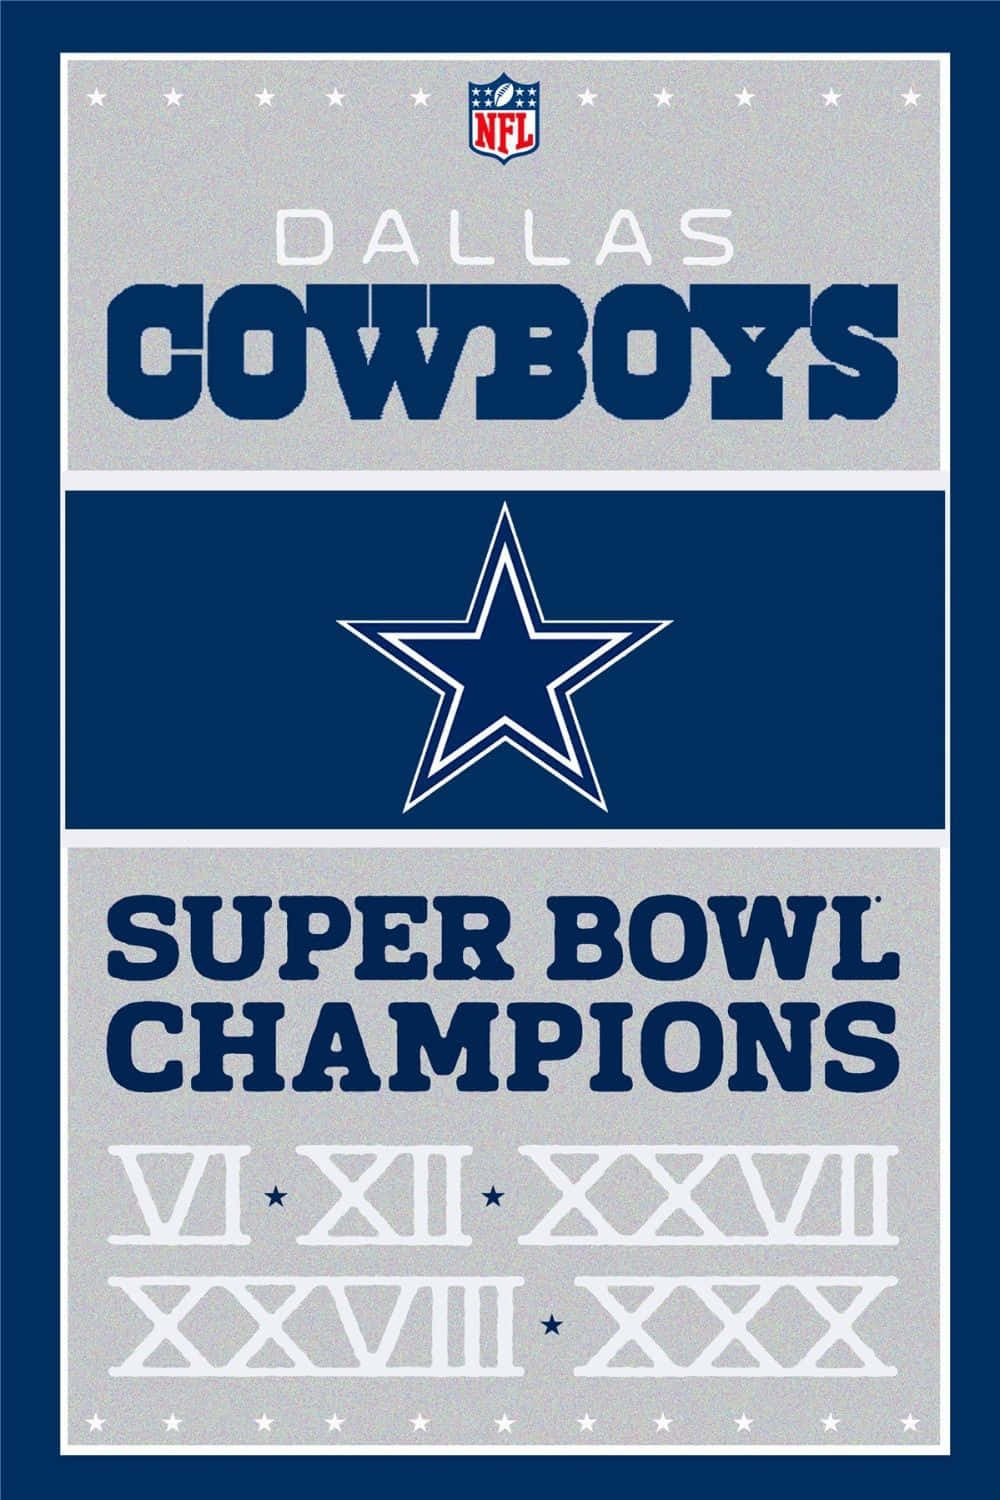 Vis din støtte til dit yndlingshold med en Cowboys iPhone tapet! Wallpaper